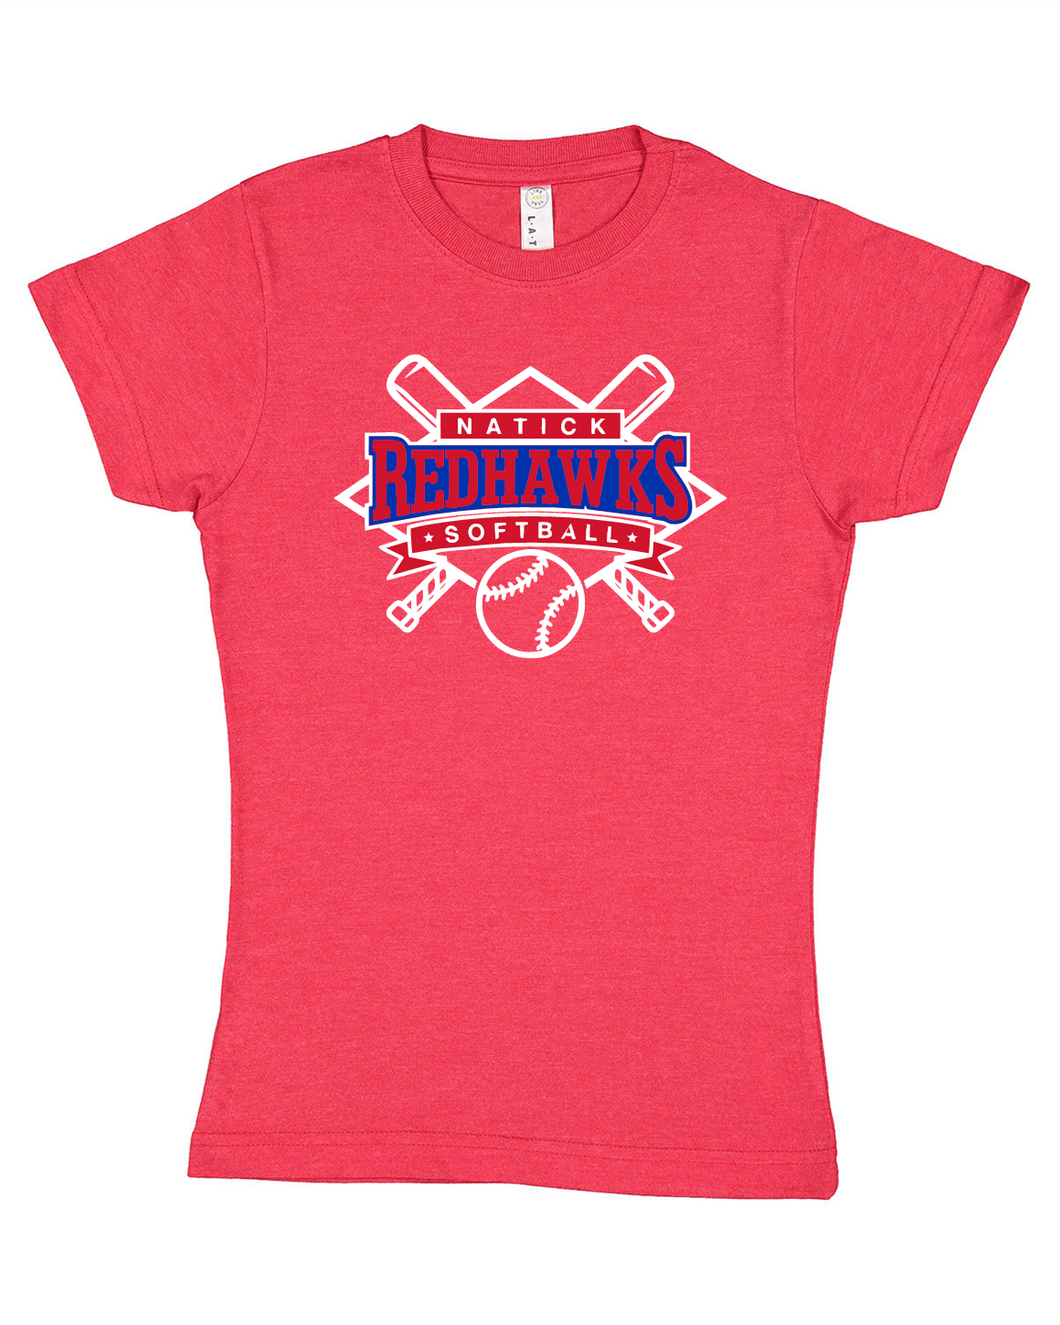 Natick Little League Softball Girls Tee Shirt